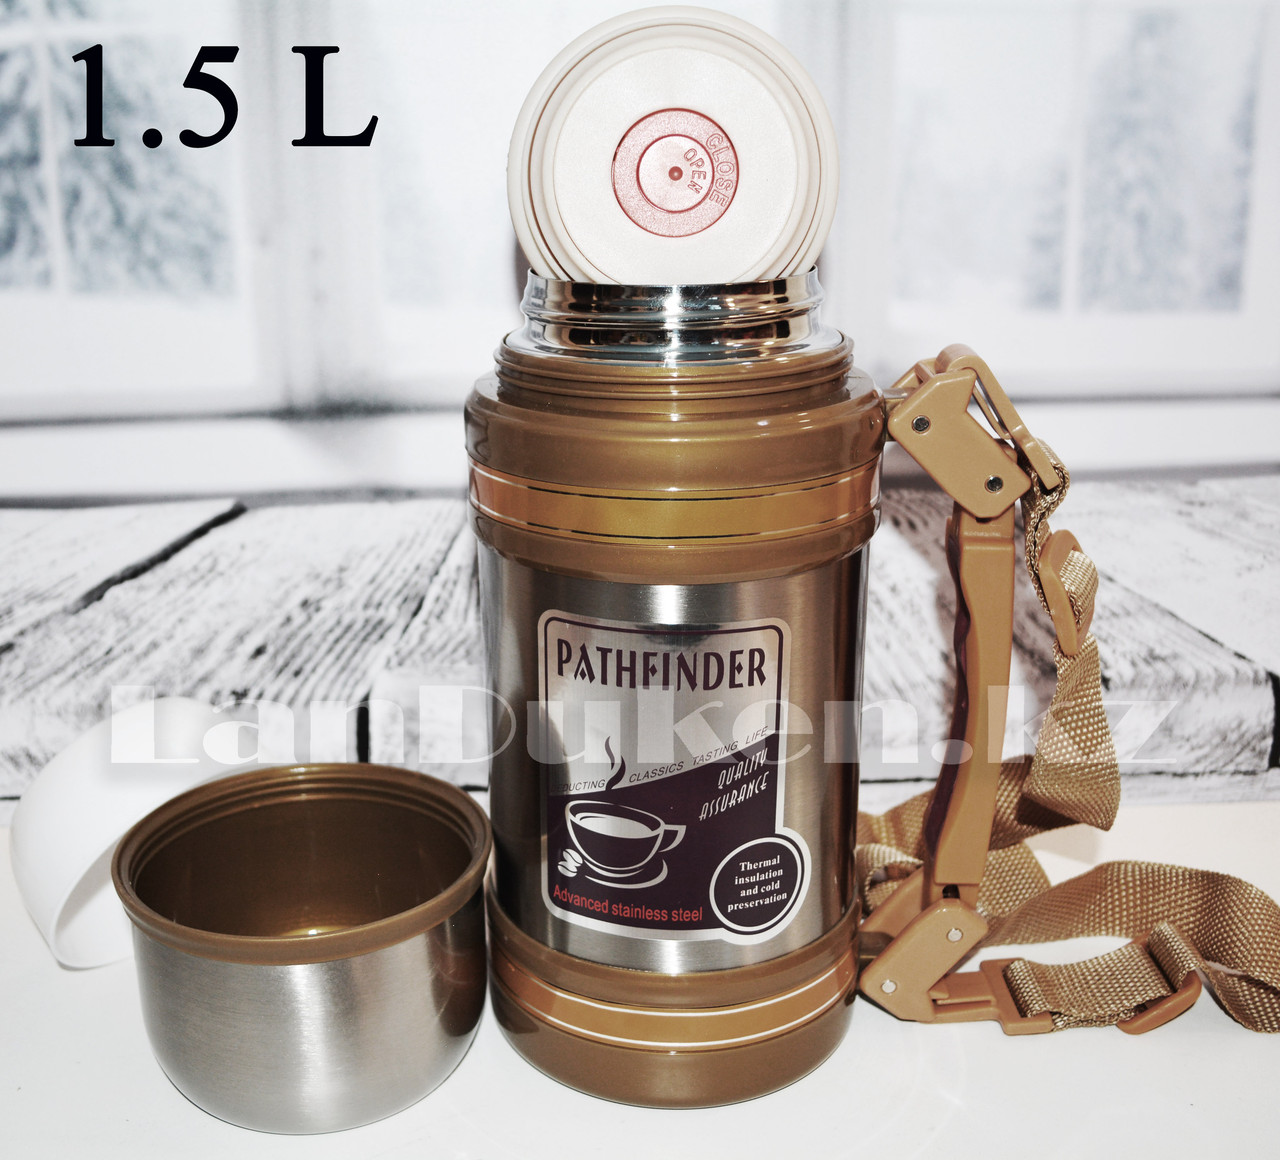 Вакуумный термос для горячих и холодных напитков Pathfinder 1.5 L с ремнем переноской, фото 1